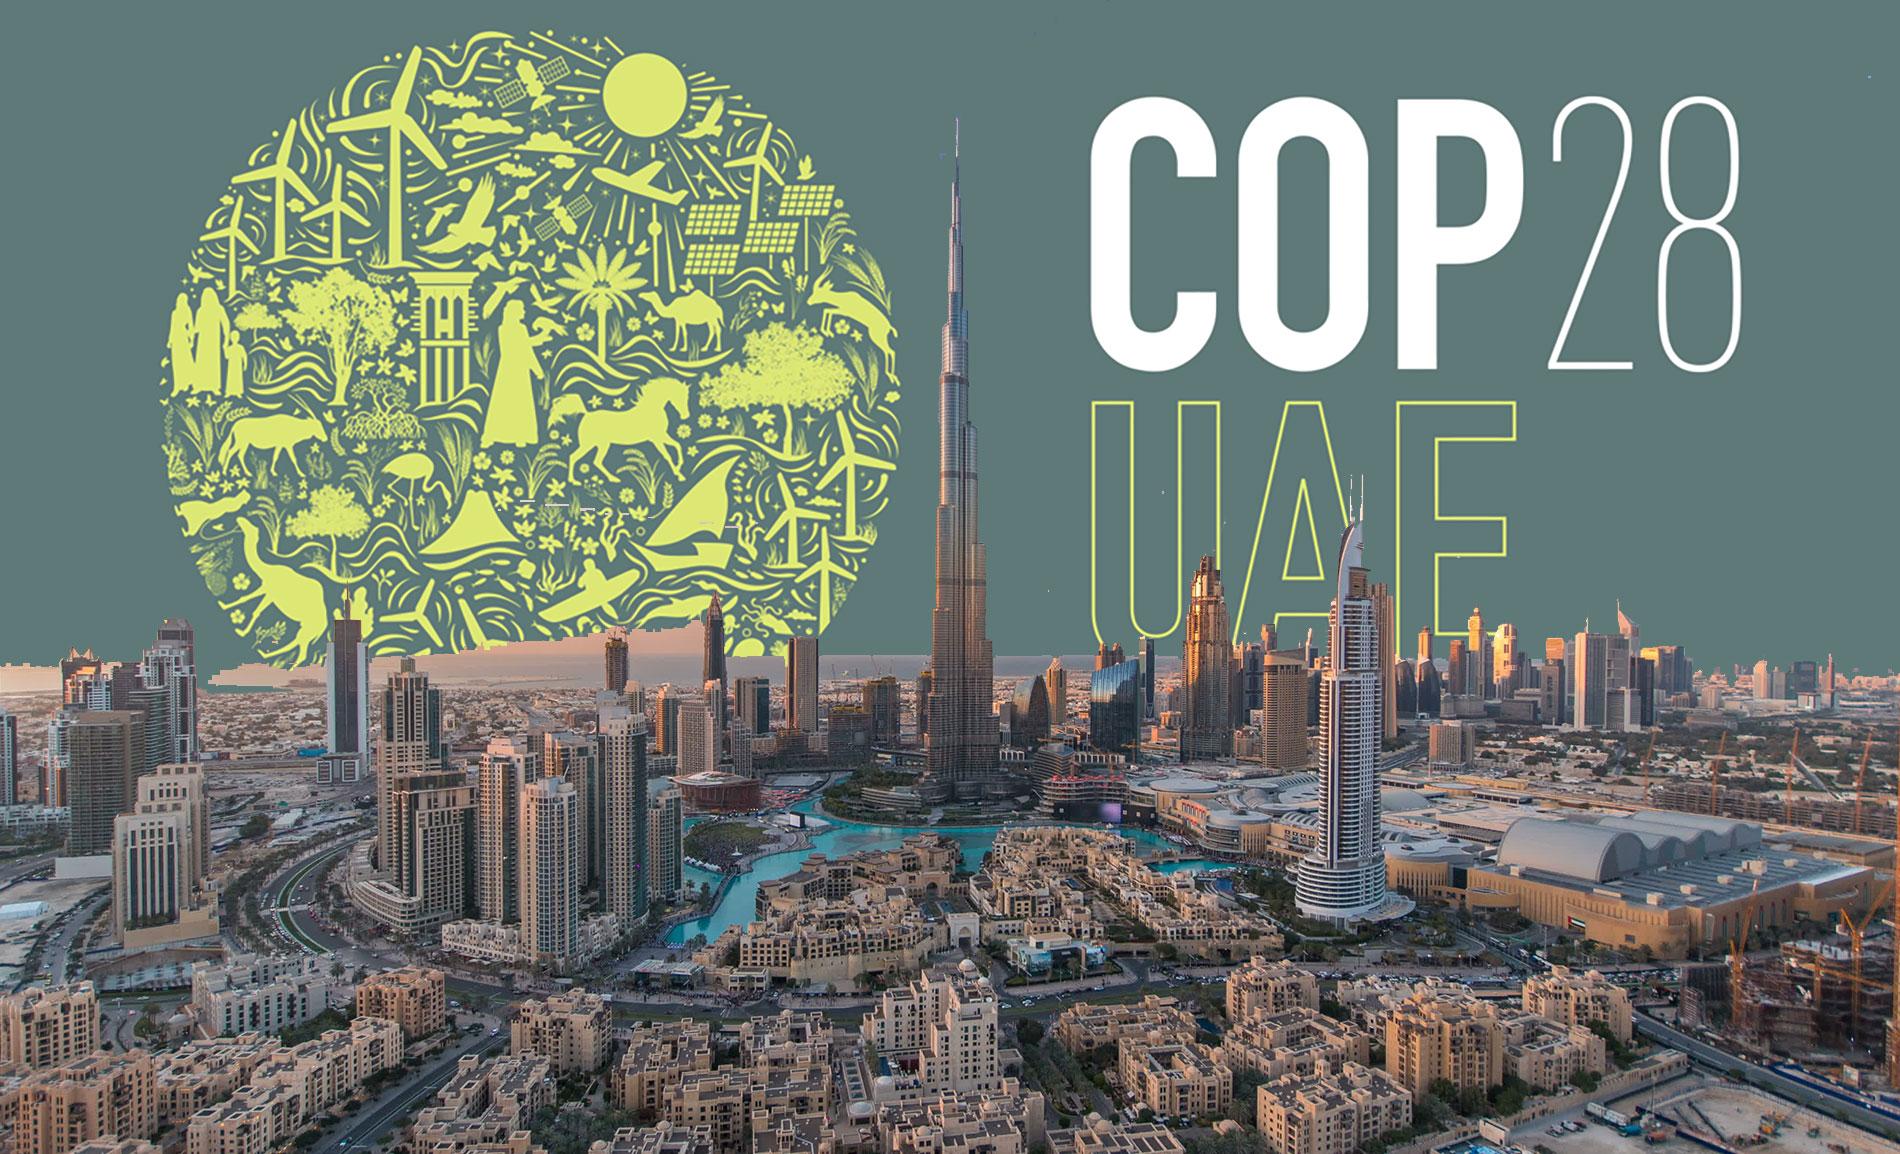 COP 25 UAE